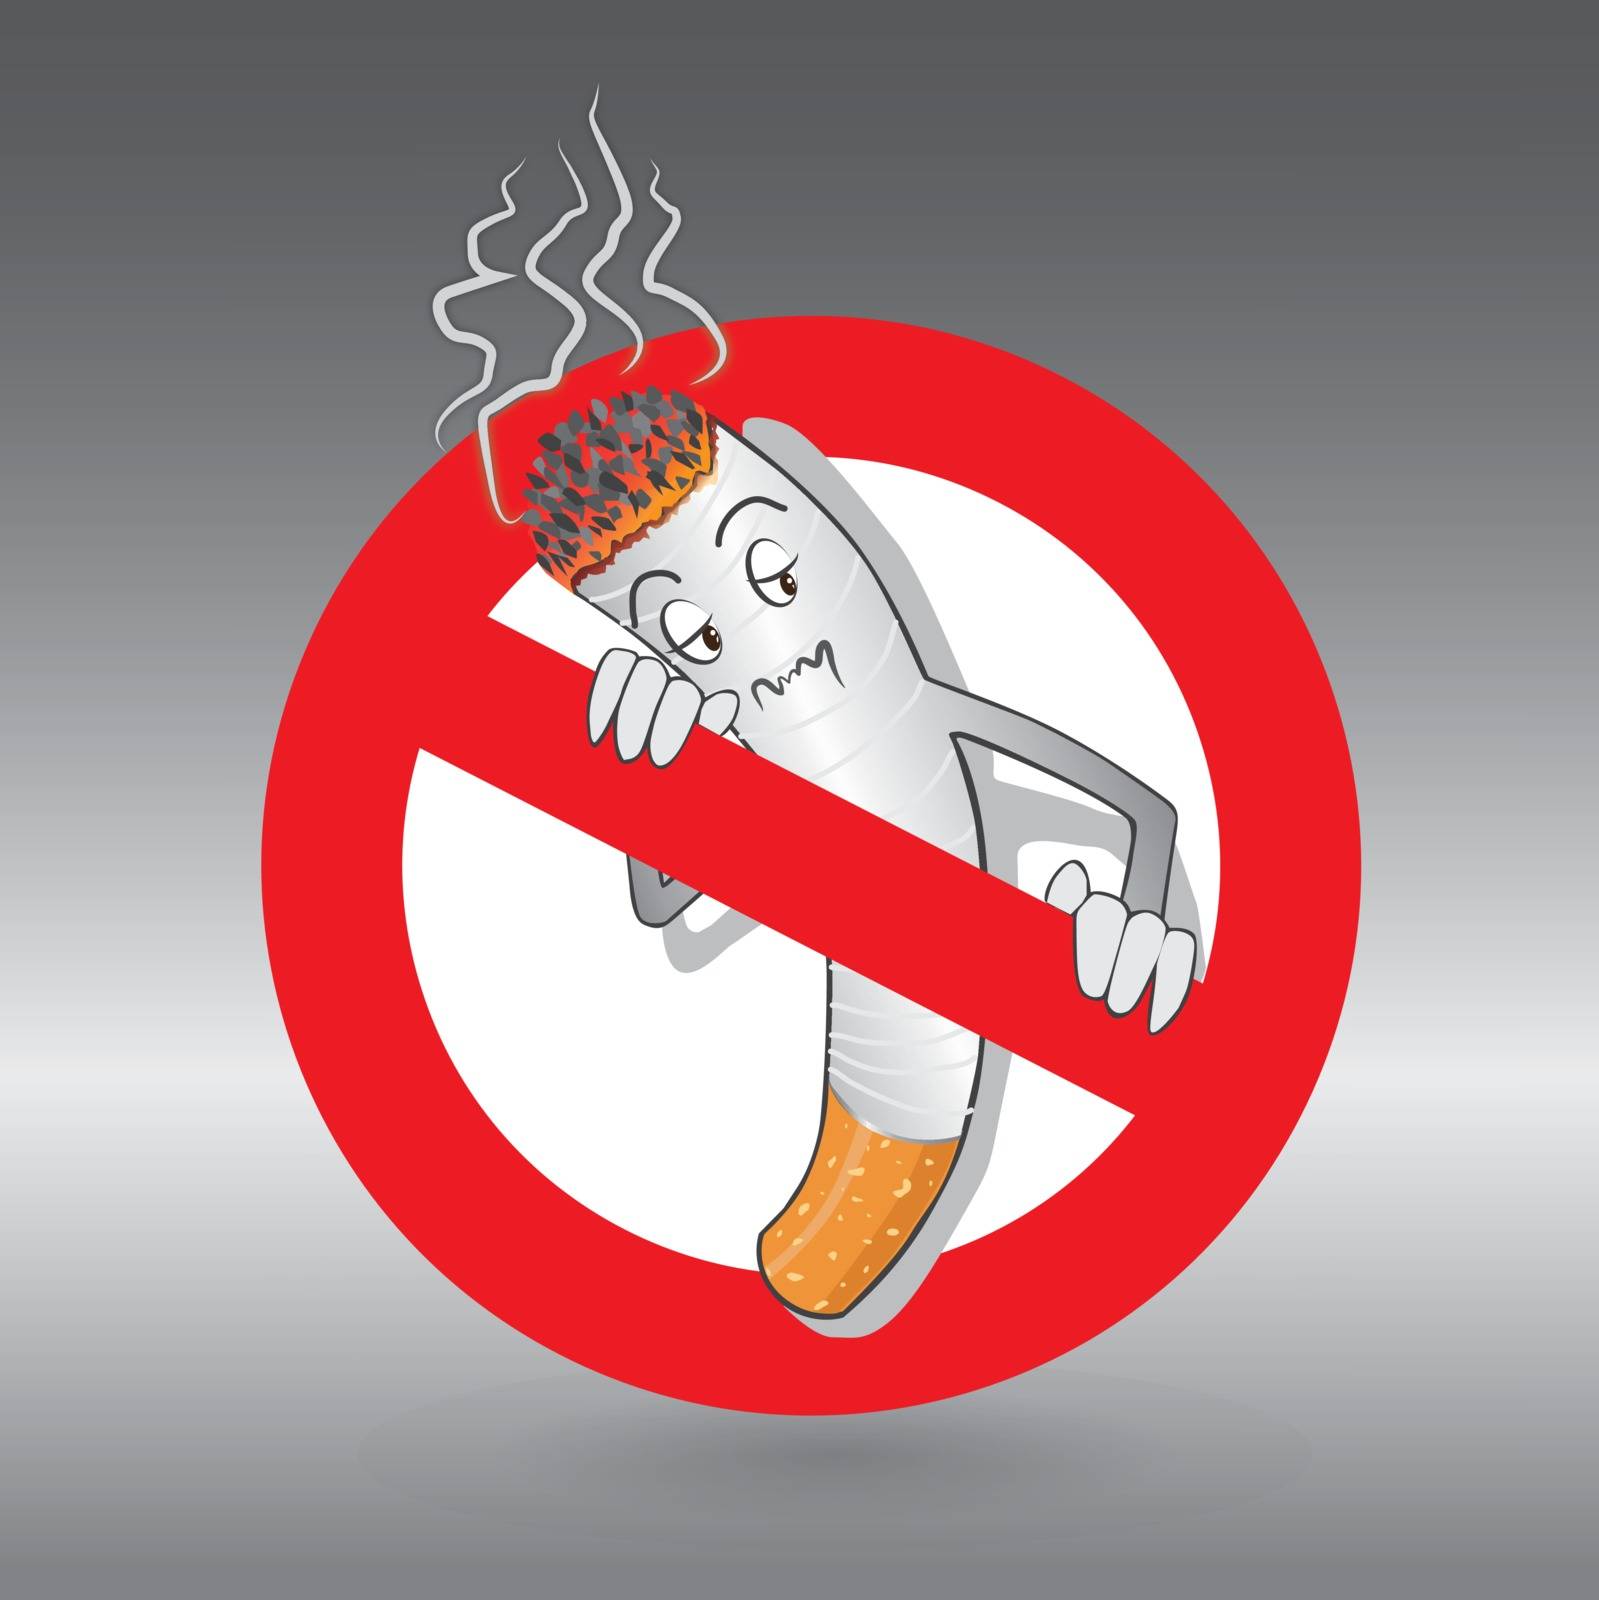 Cartoons No Smoking Sign by PeachLoveU